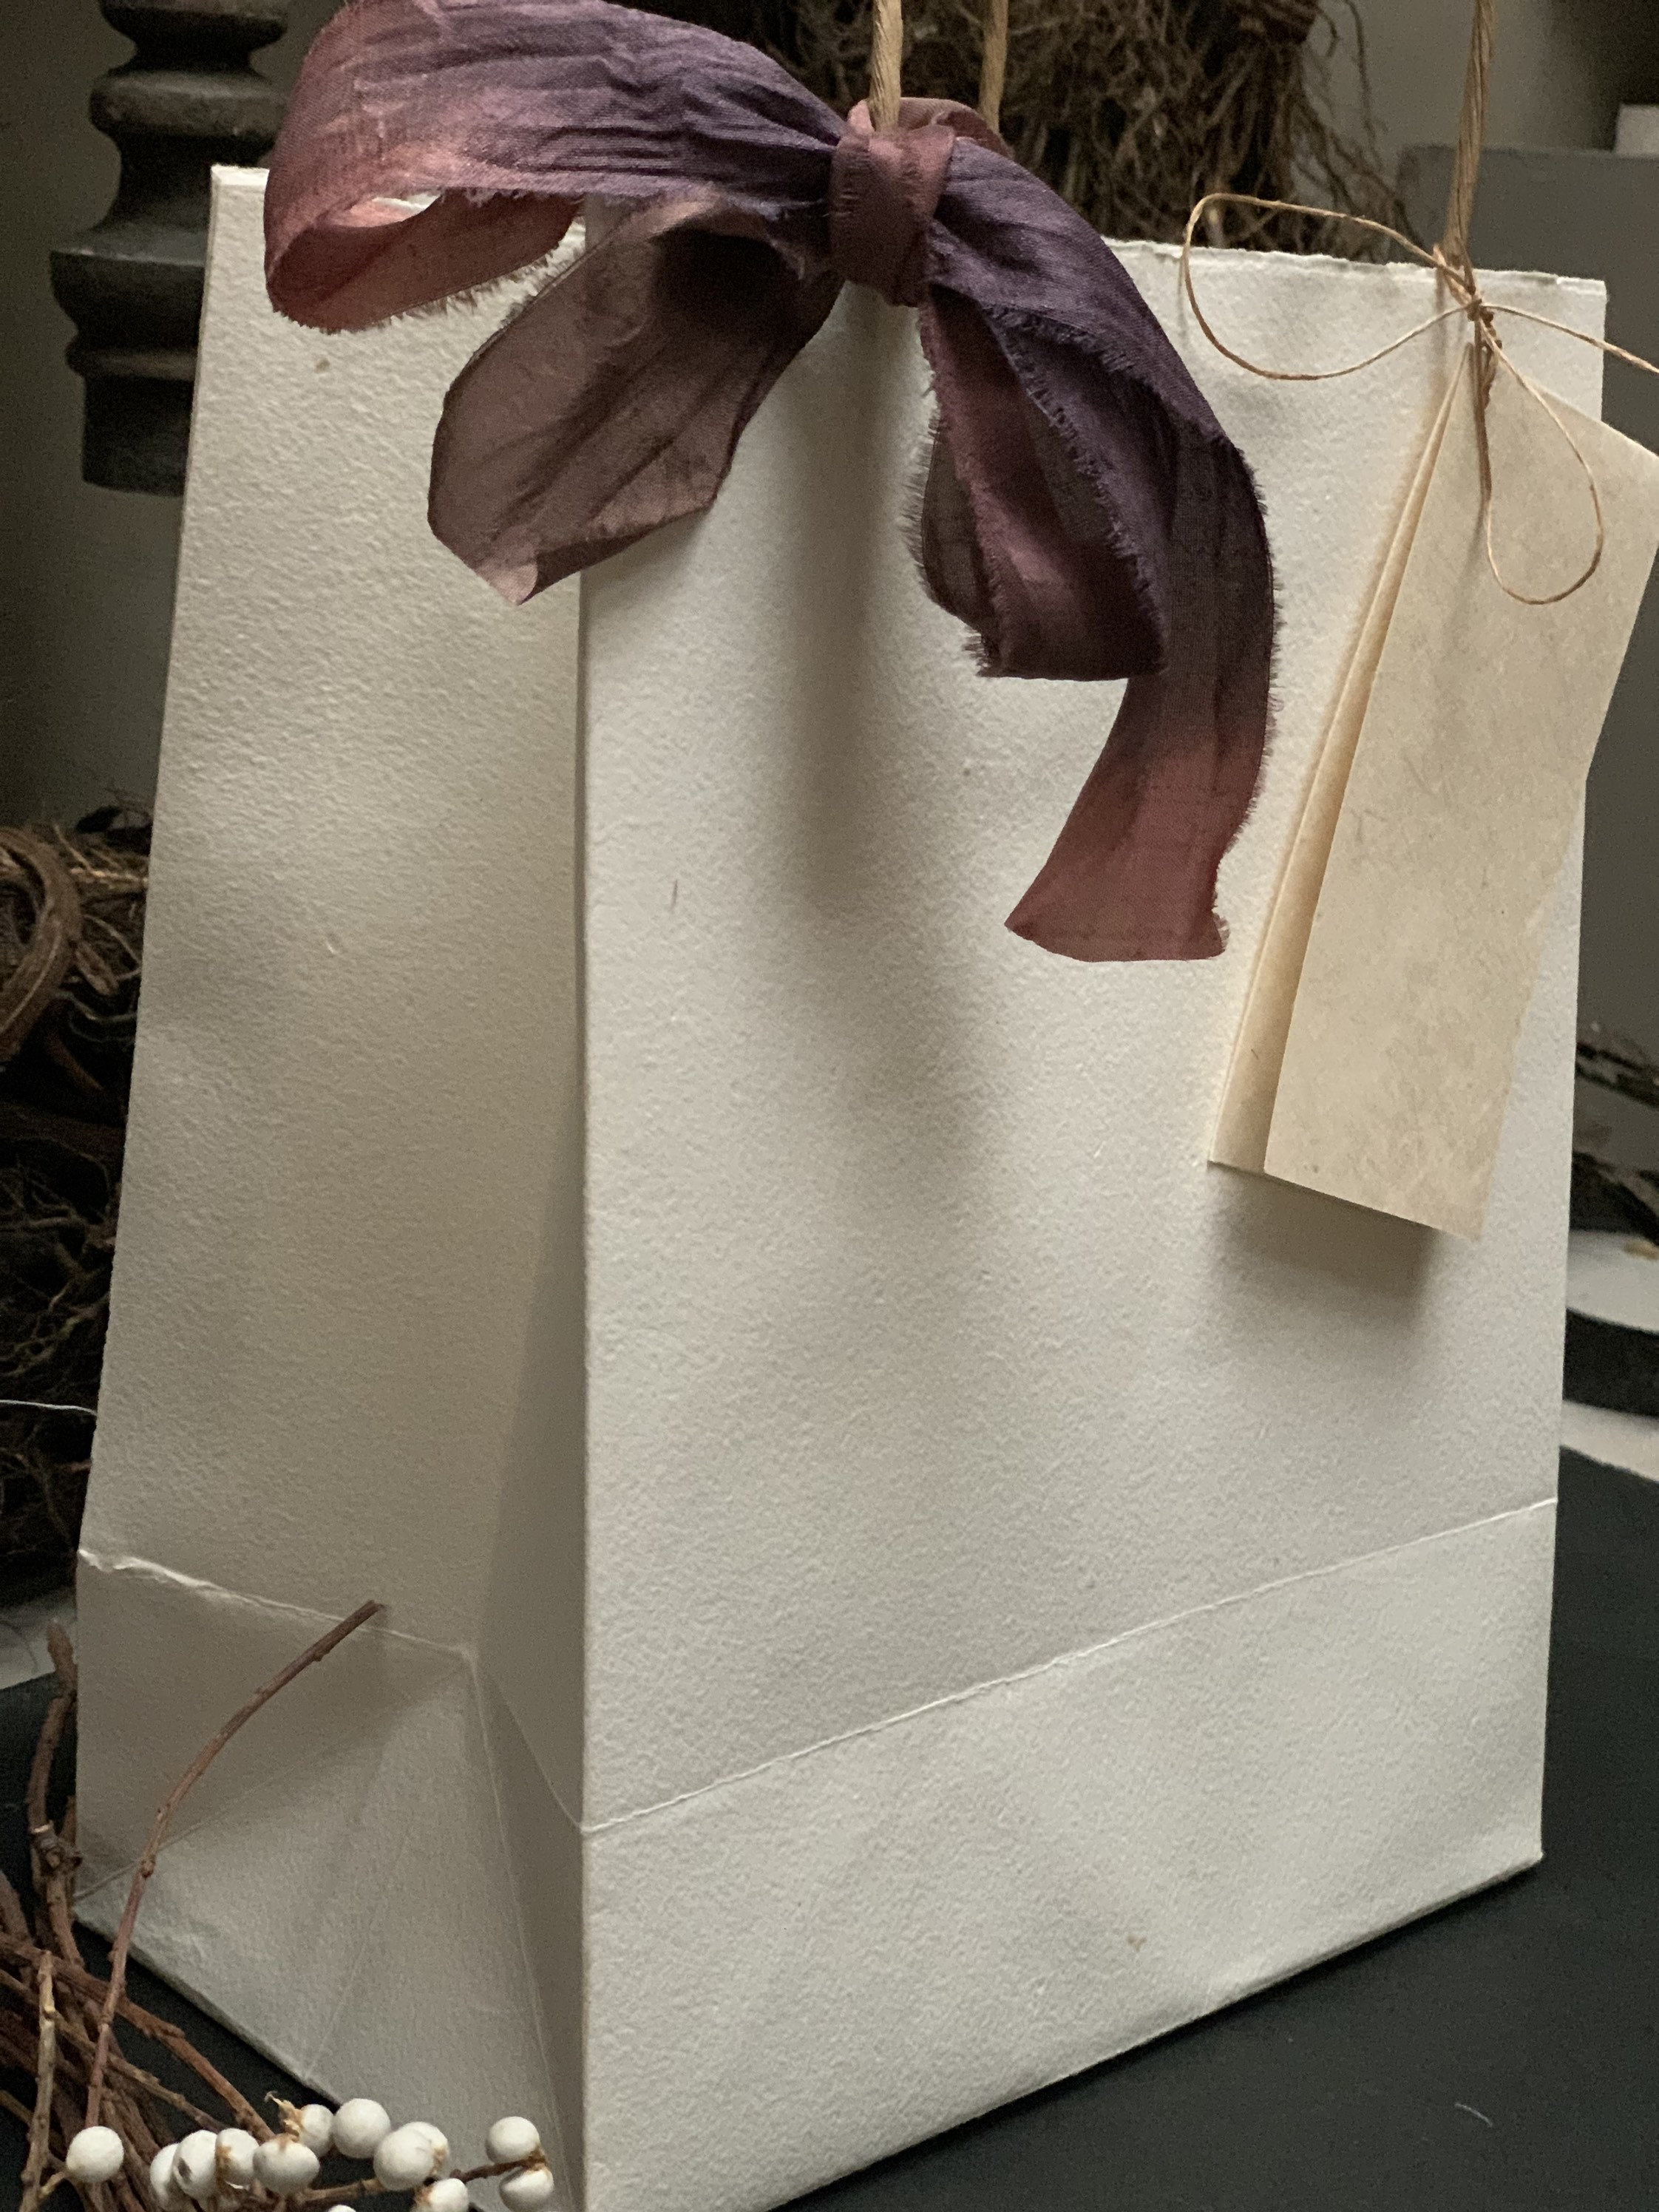 Handmade Paper Gift Bag | Etsy UK